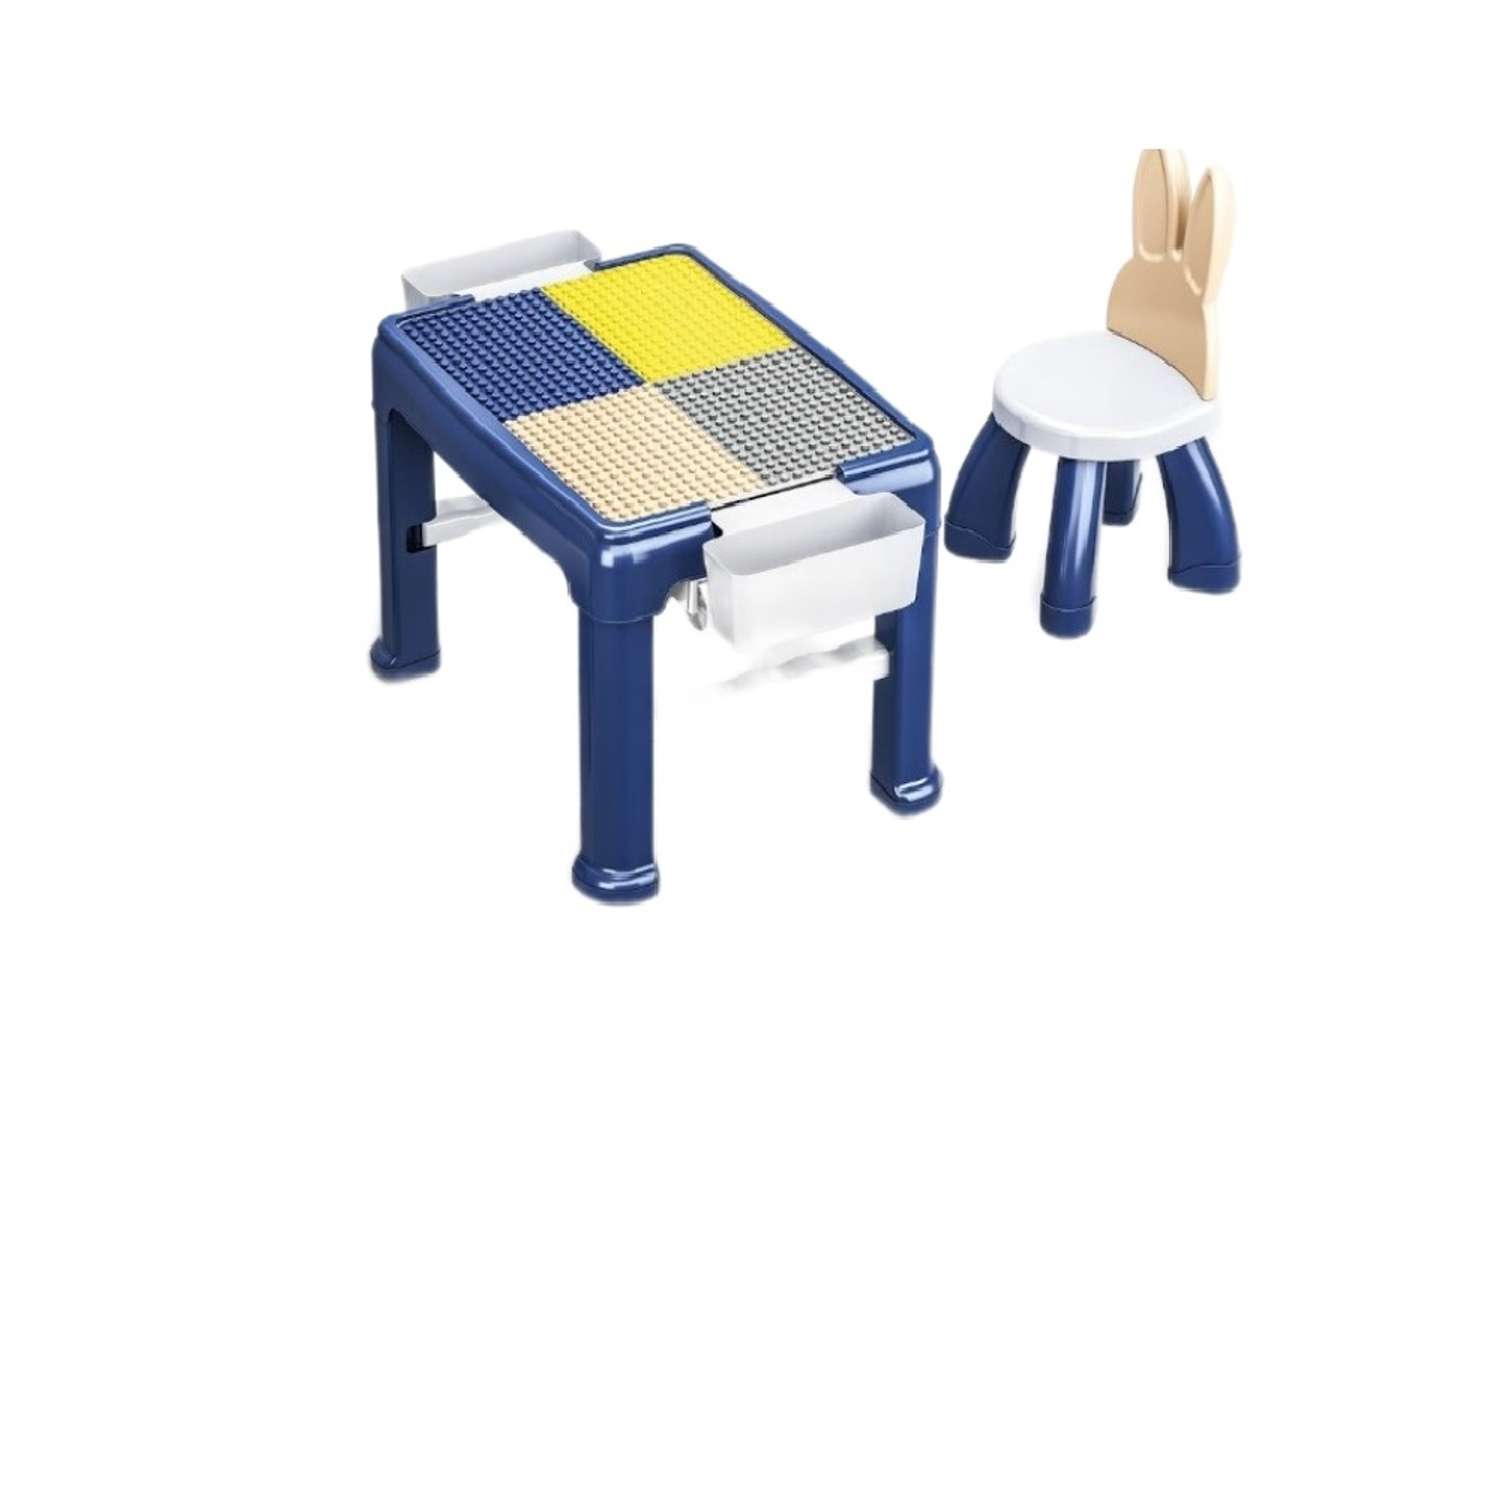 Игровой набор S+S для сборки конструктора стол и стул - фото 1